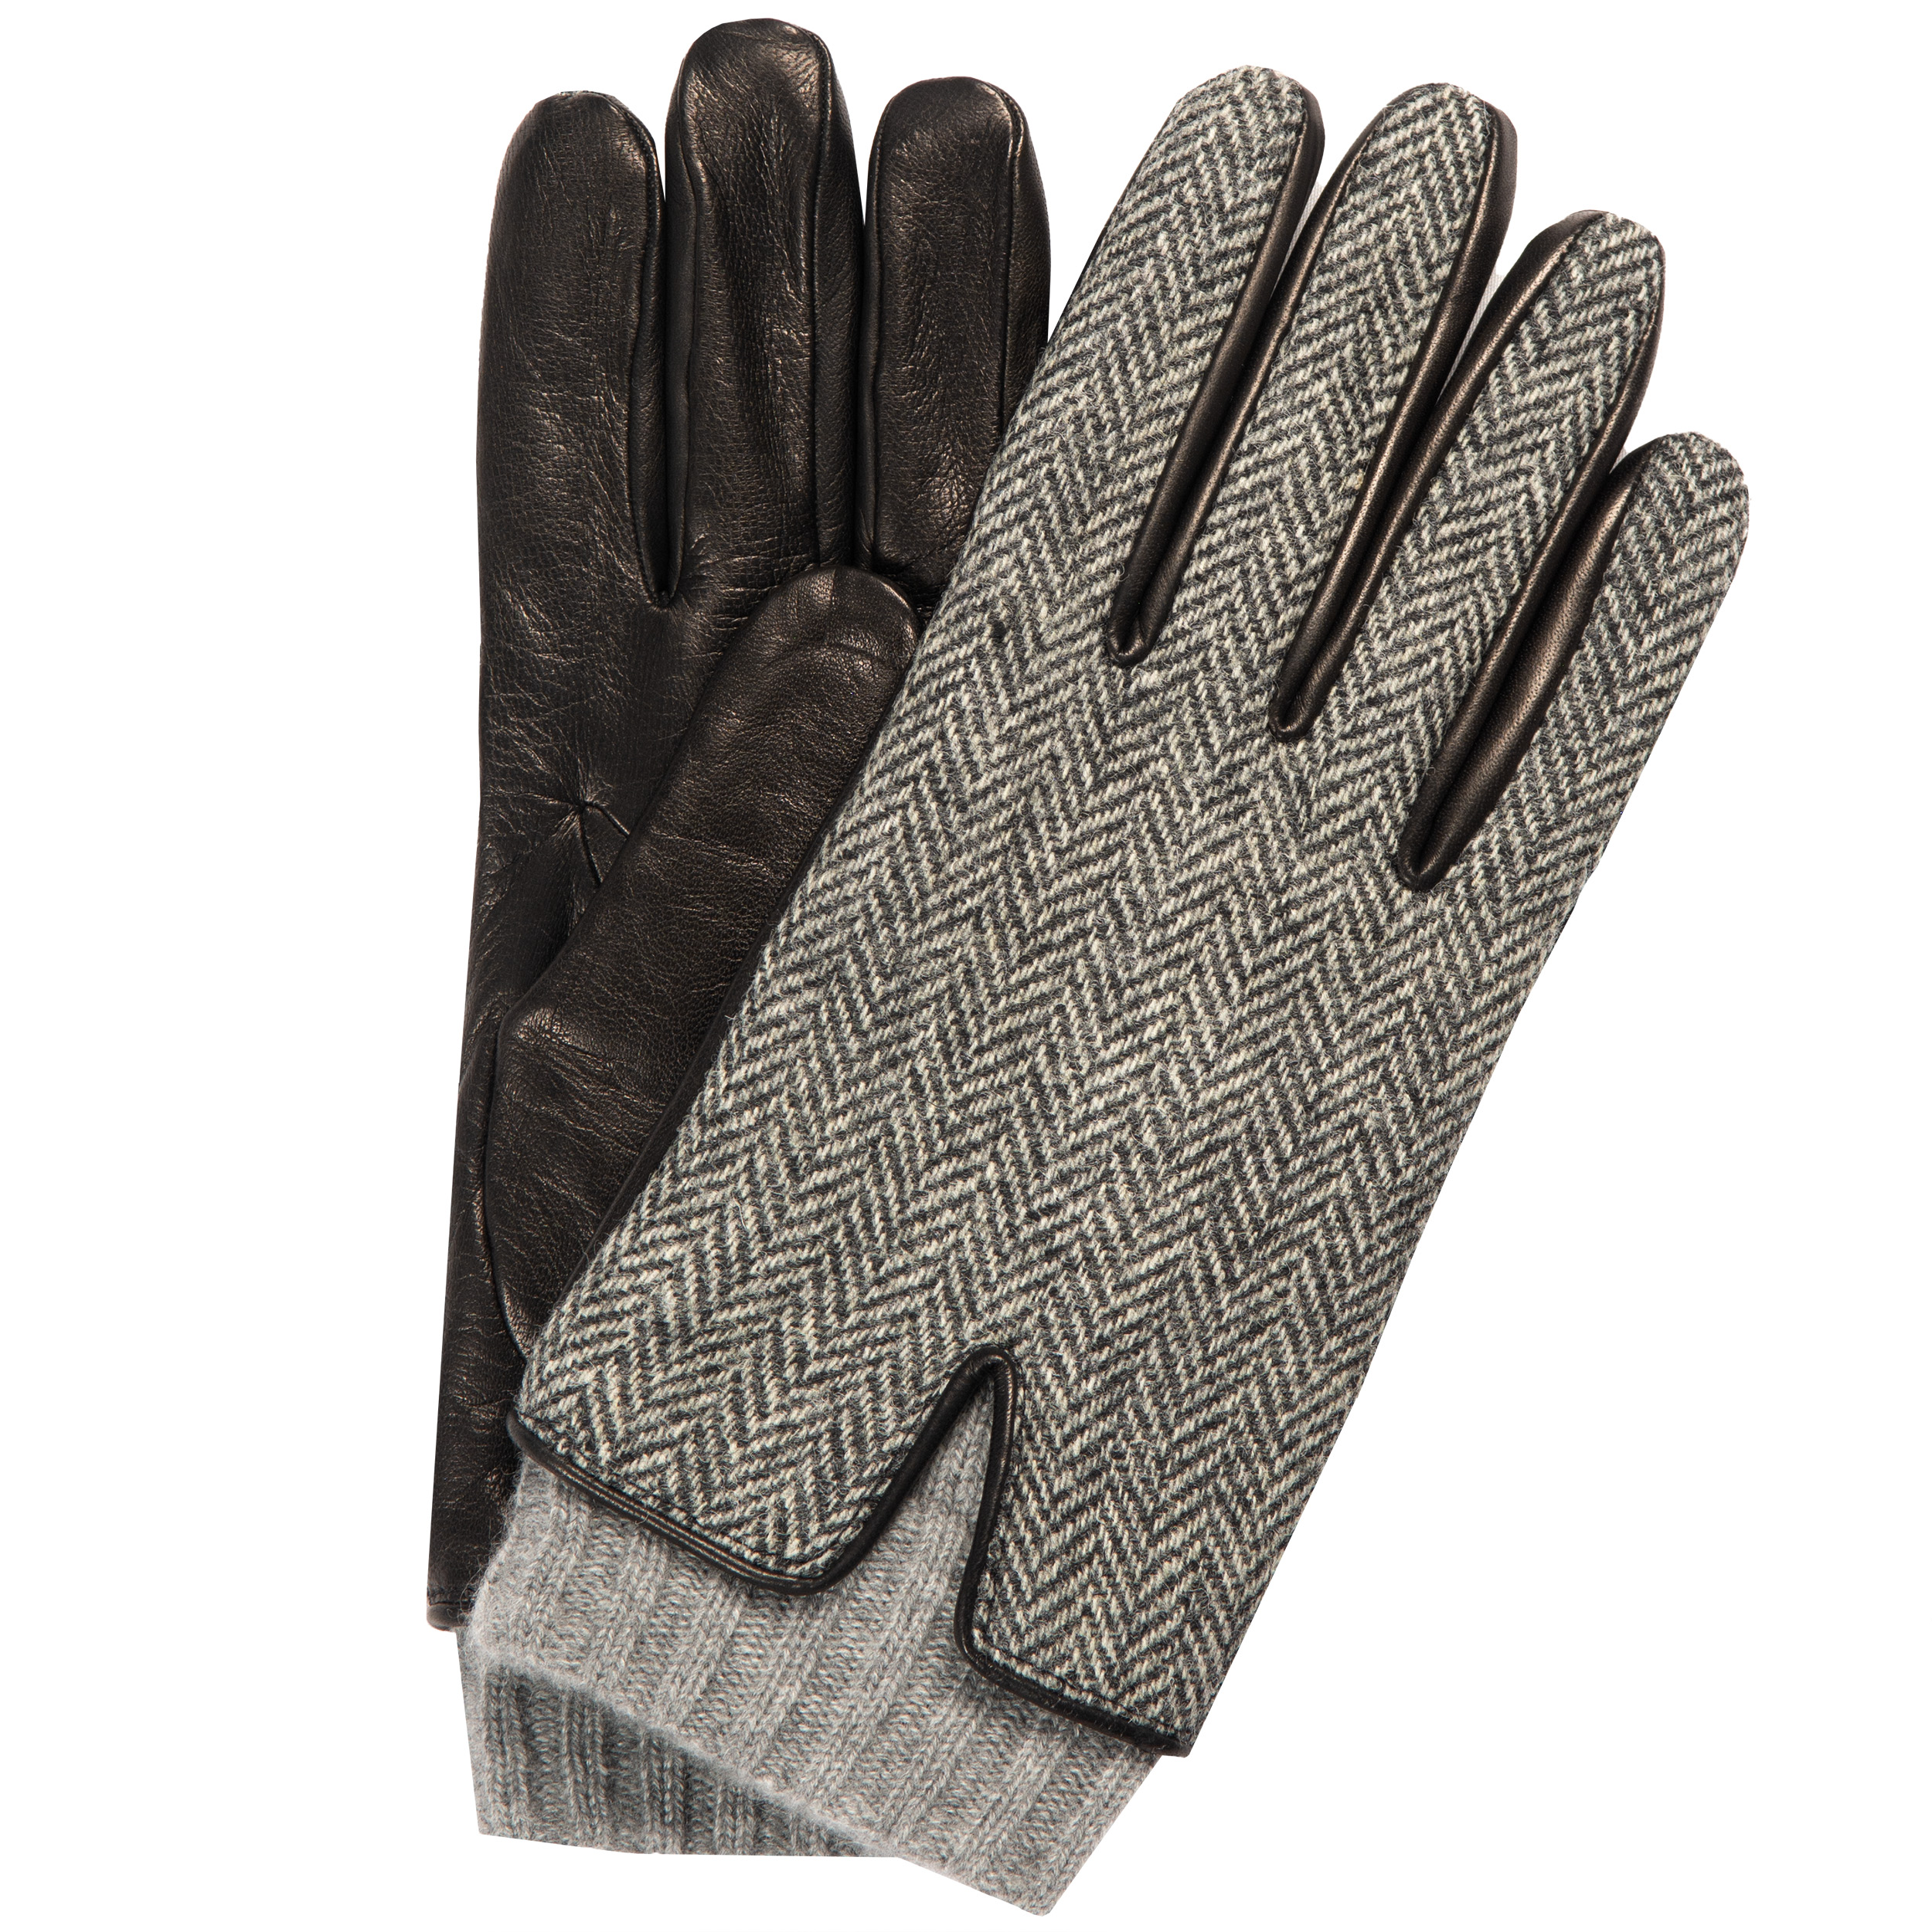 MAZZOLENI Herringbone Wool/Leather Gloves Black/White